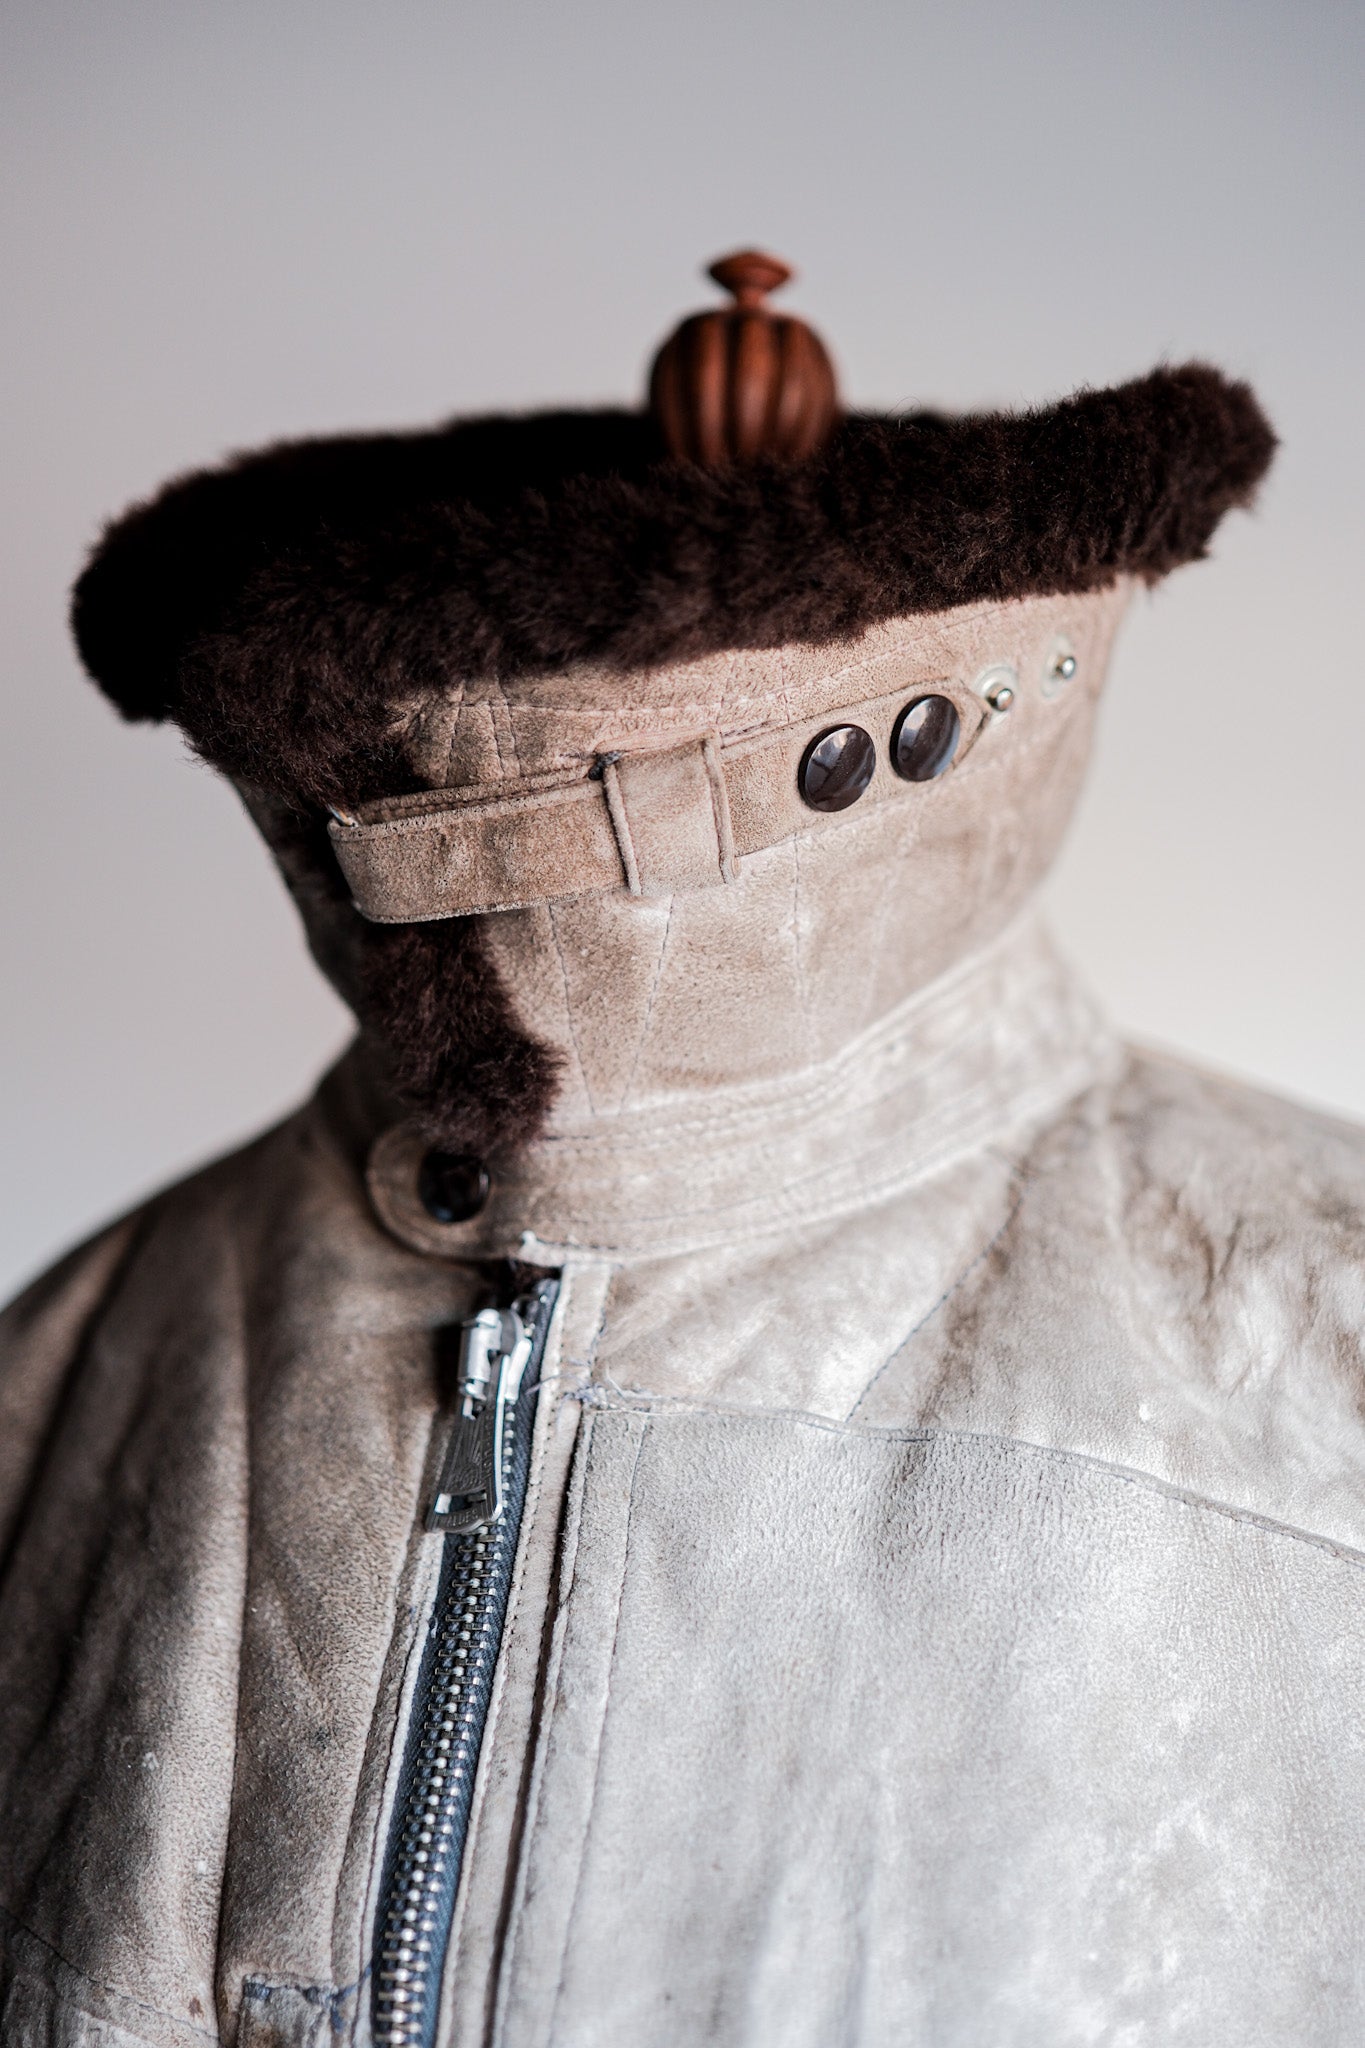 [〜40年代]wwⅱ德國空軍冬季羊皮飛行夾克“ Lufftwaffe”“不尋常的口袋”